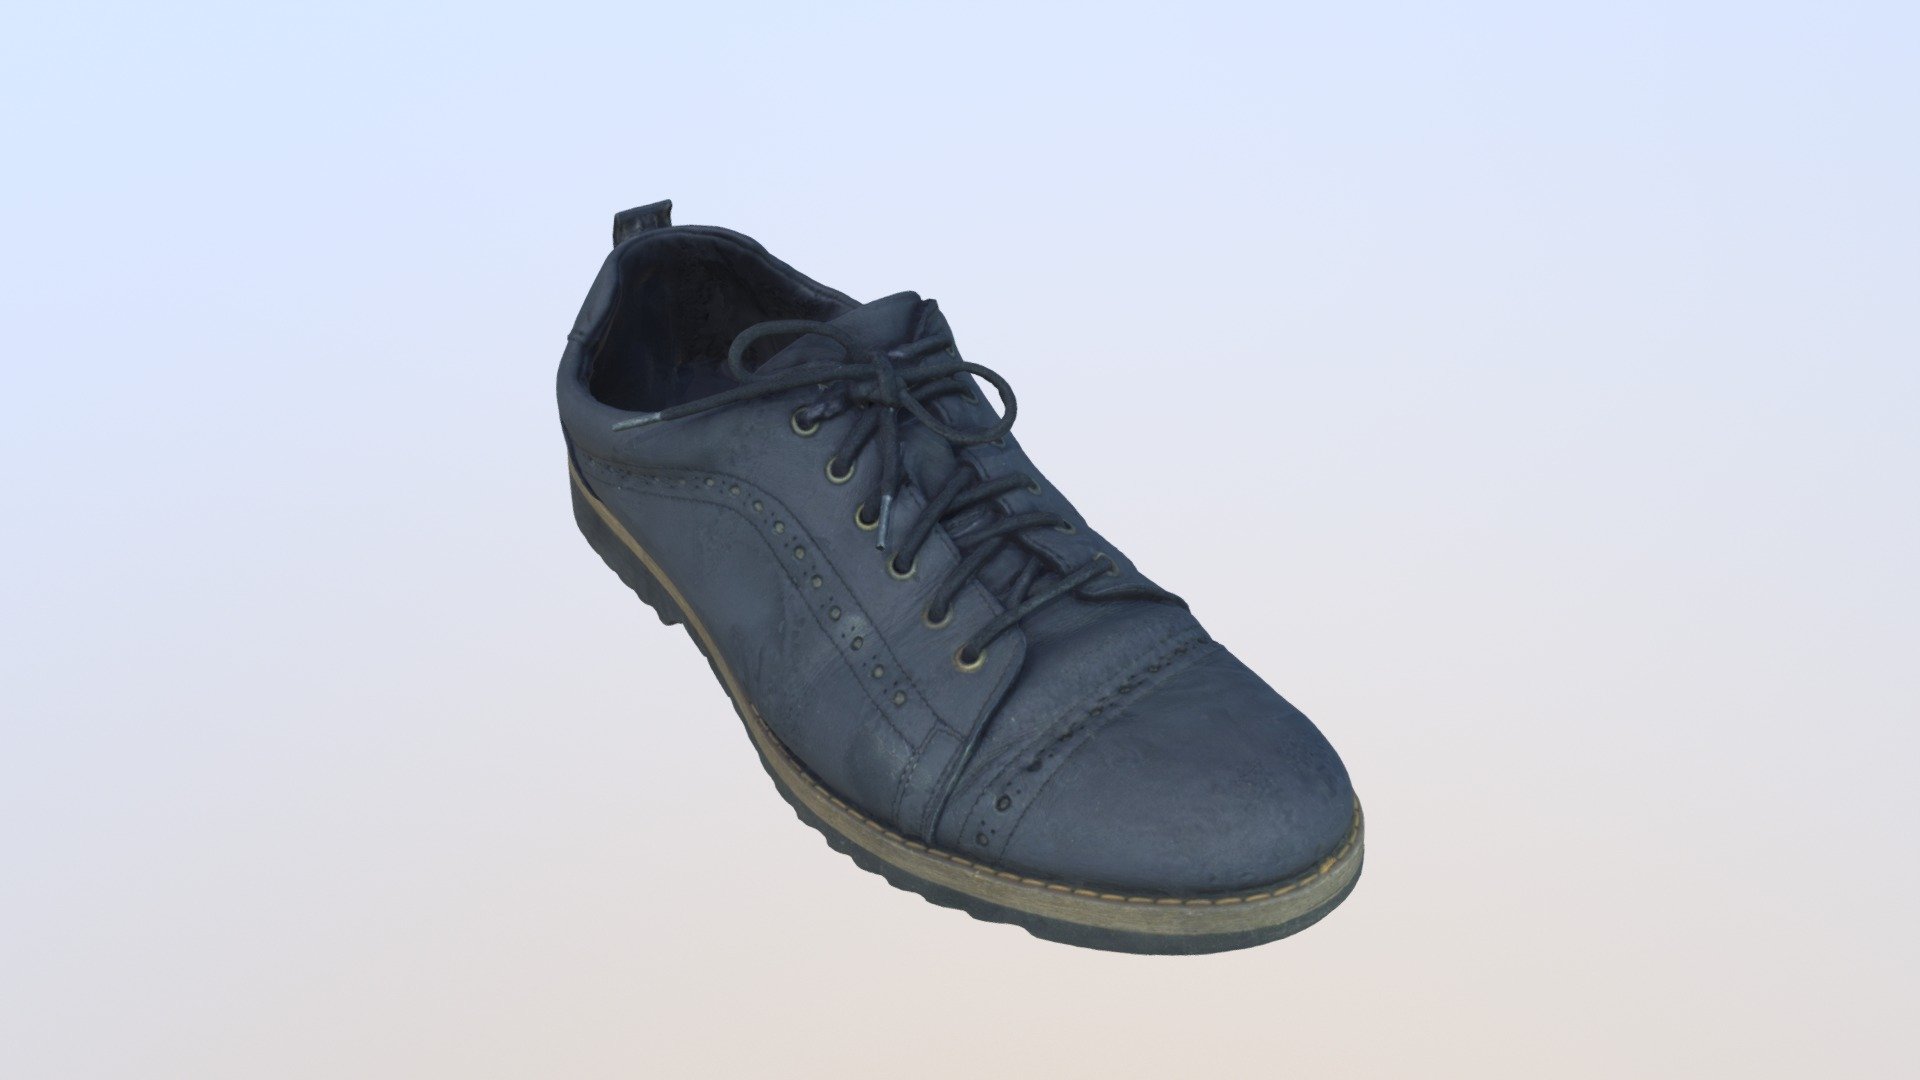 Shoe - PB135 Shoe Hi - 3D model by shoes 3d model